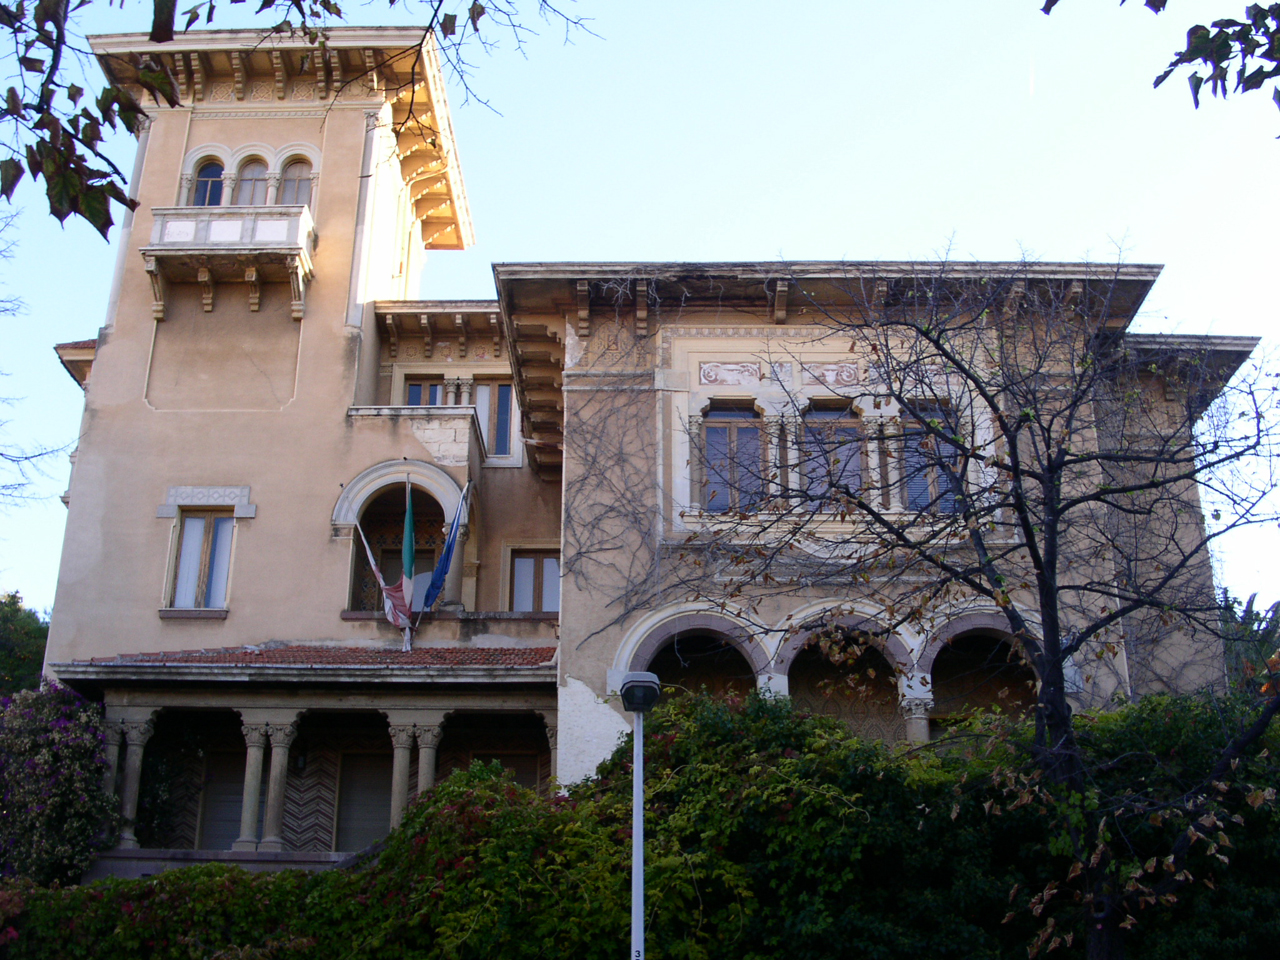 Villa Caria (villa, signorile) - Sassari (SS) 